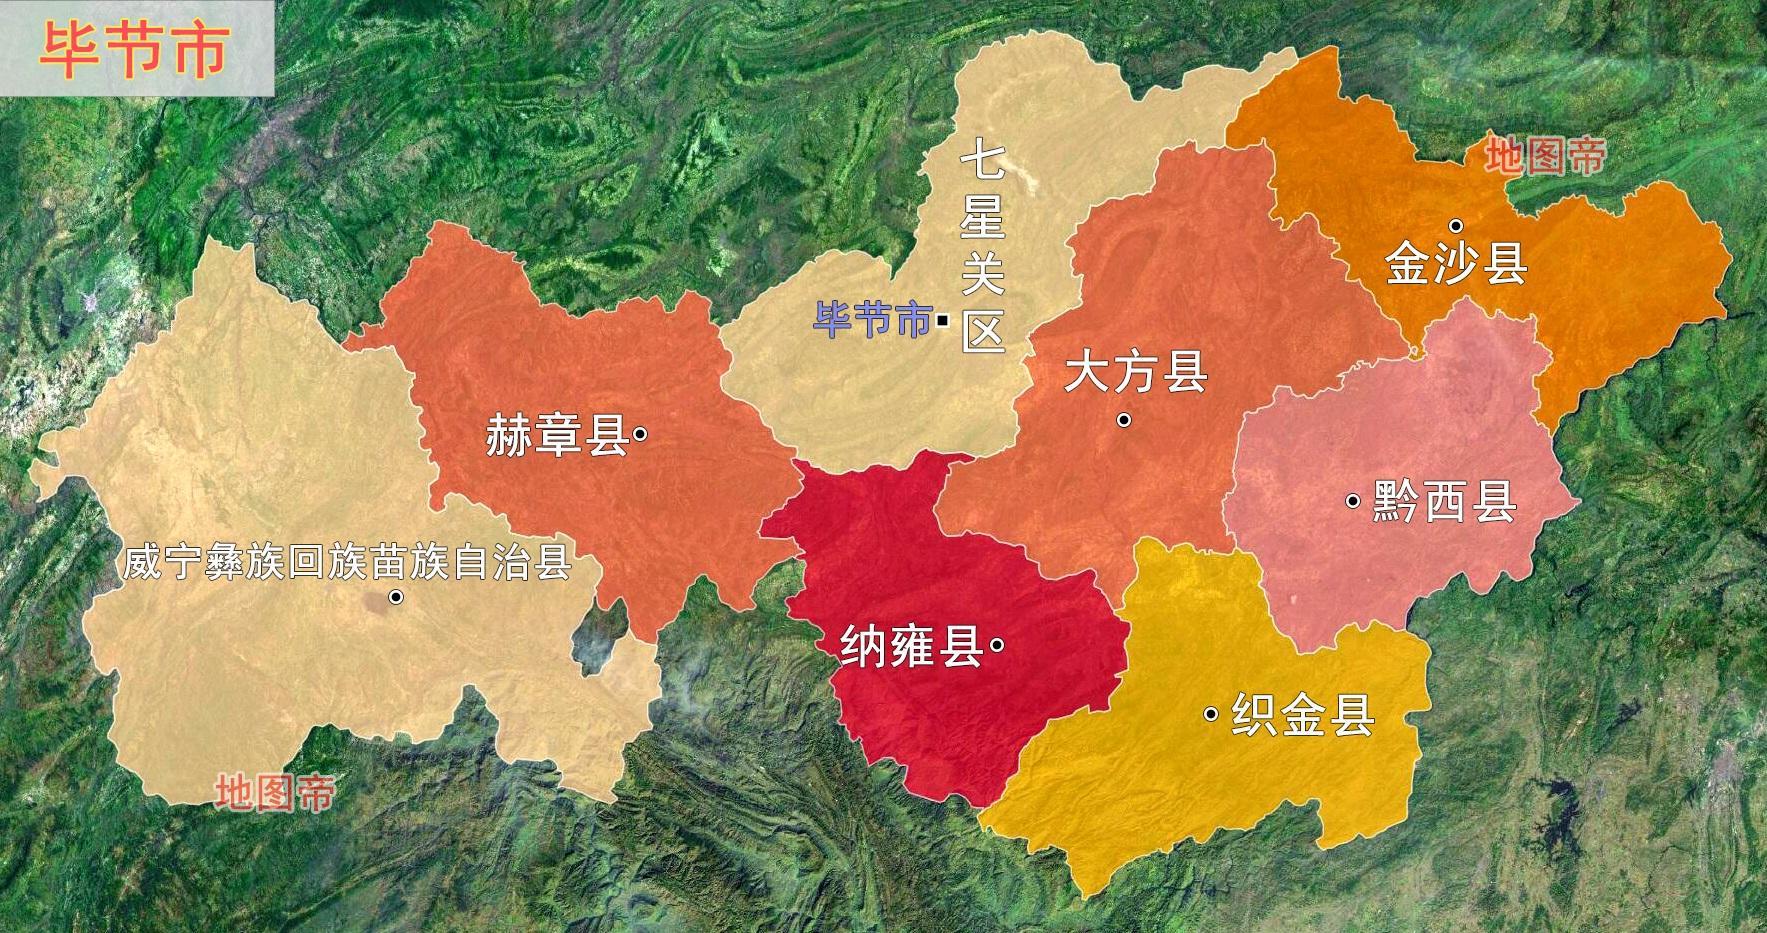 贵州省9个地级行政区,它们的名字有什么来历?